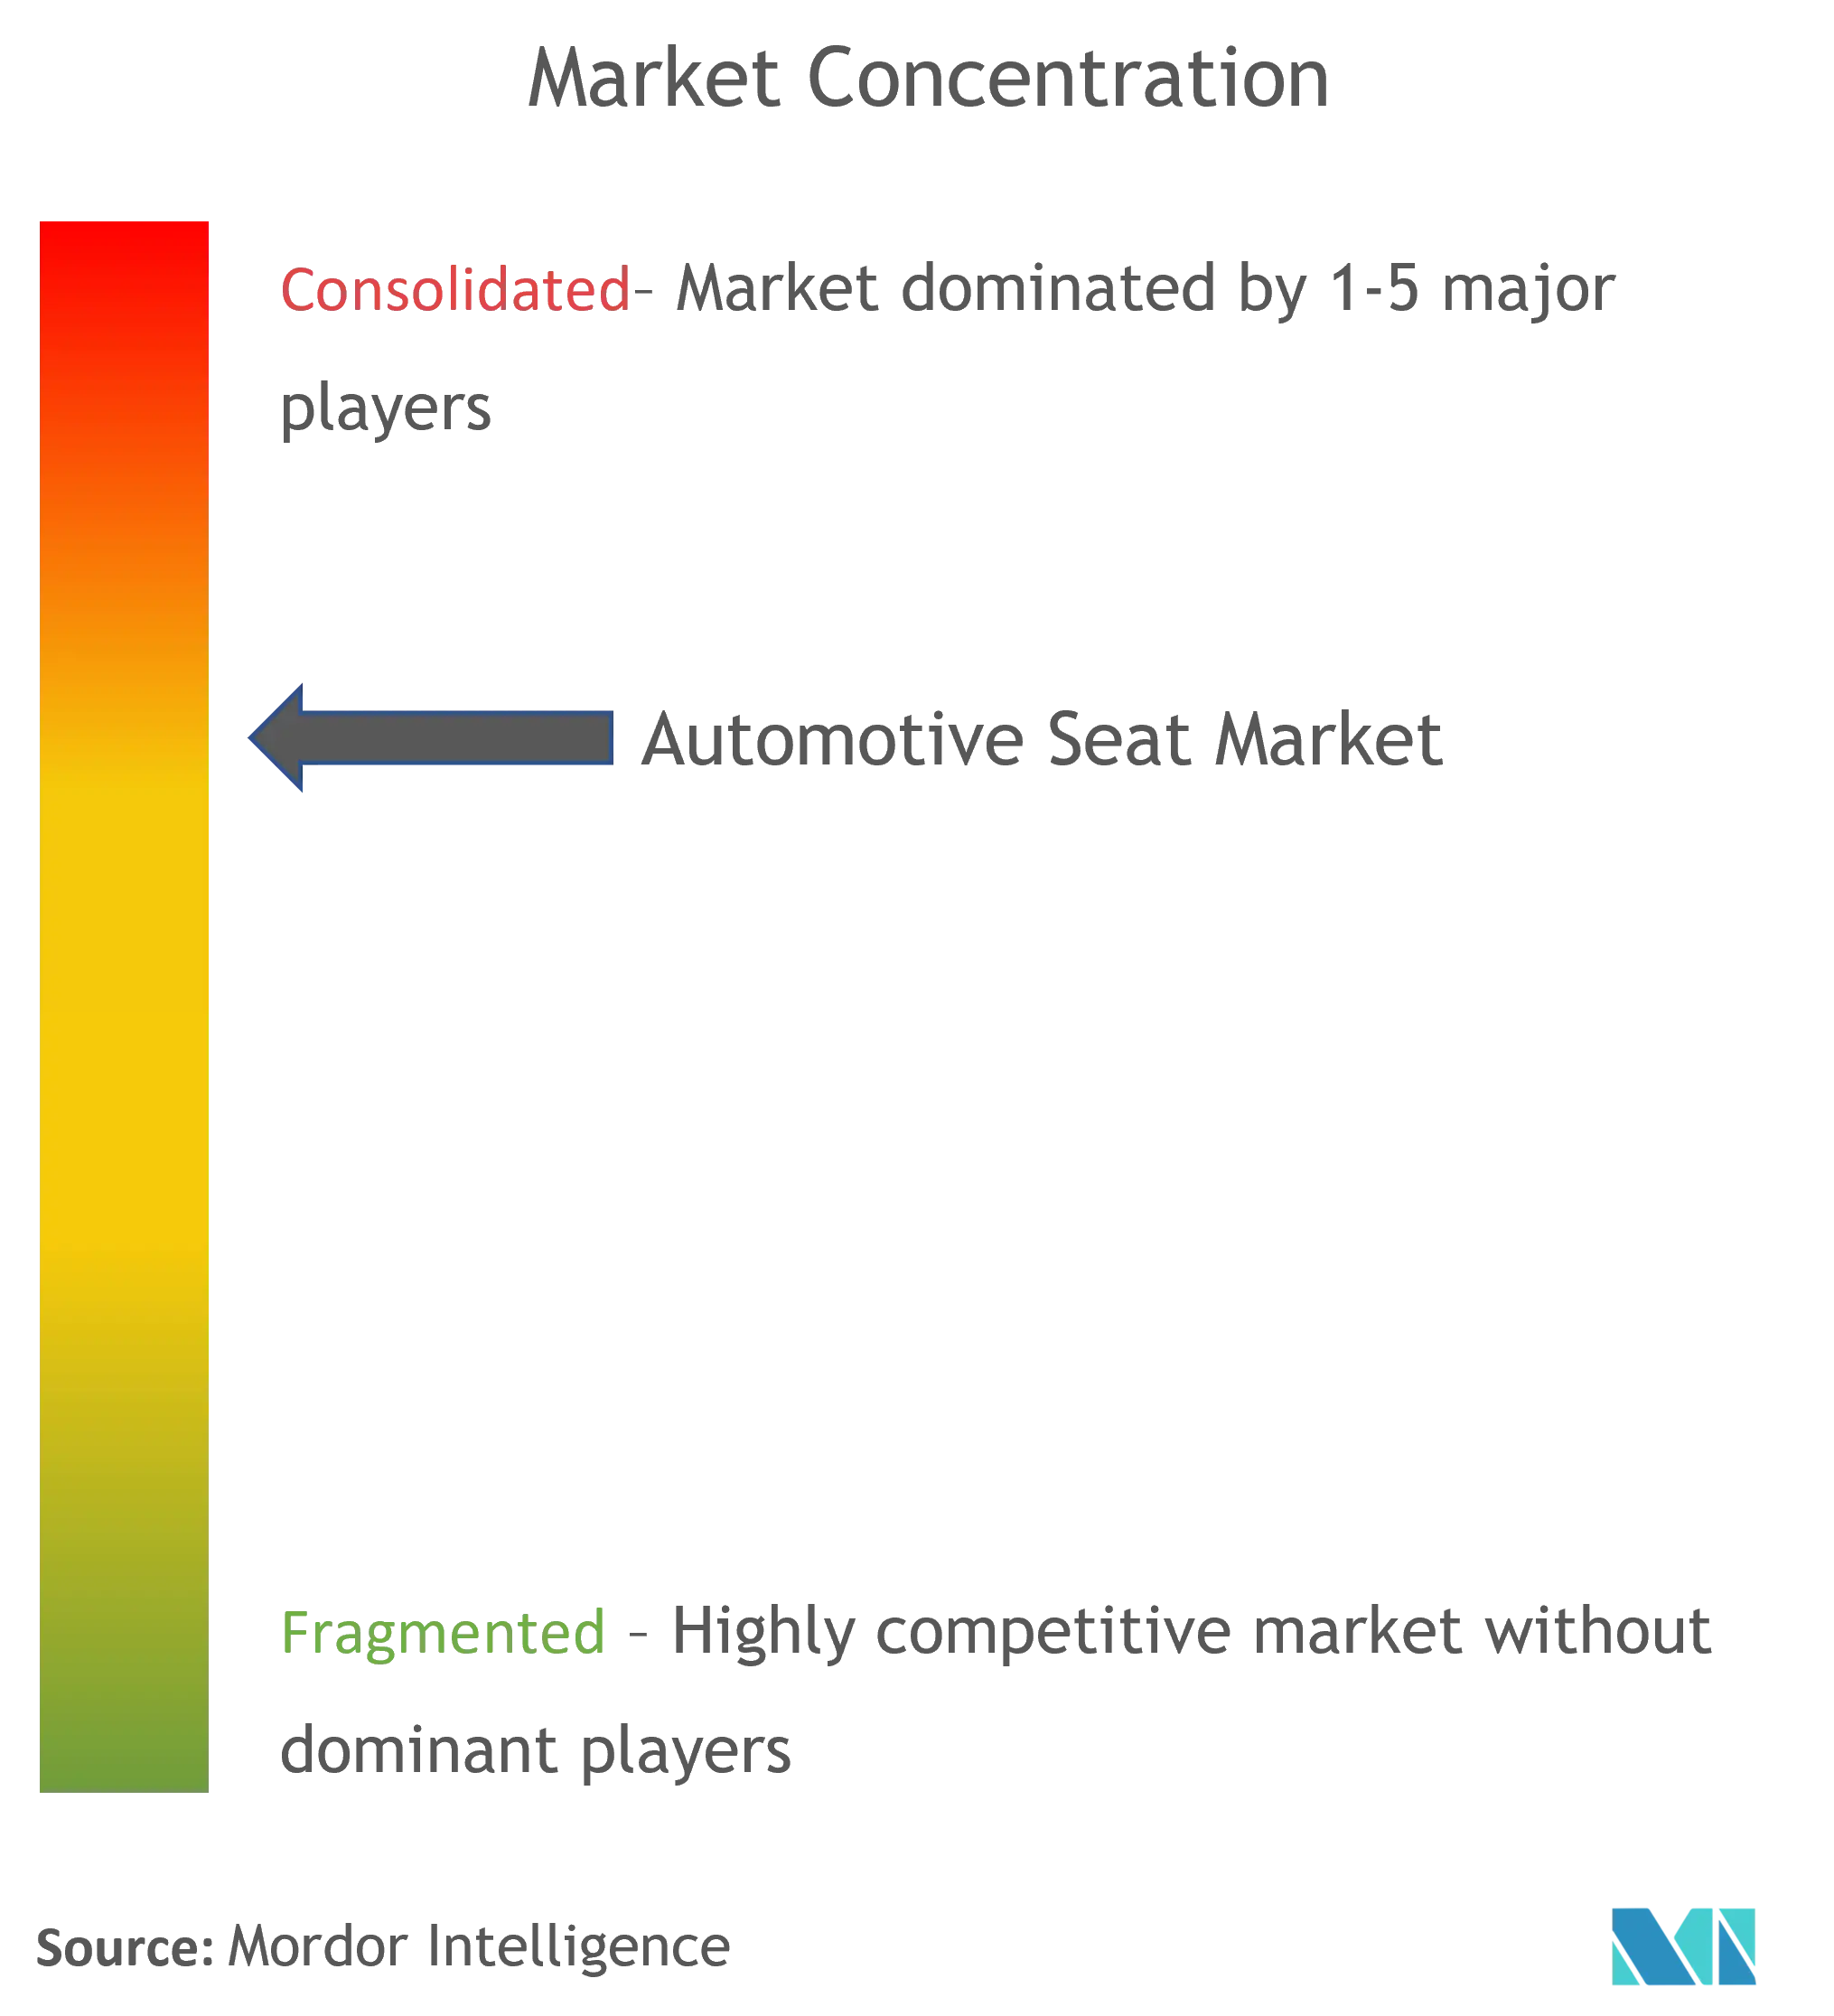 Automotive Seat Market Concentration